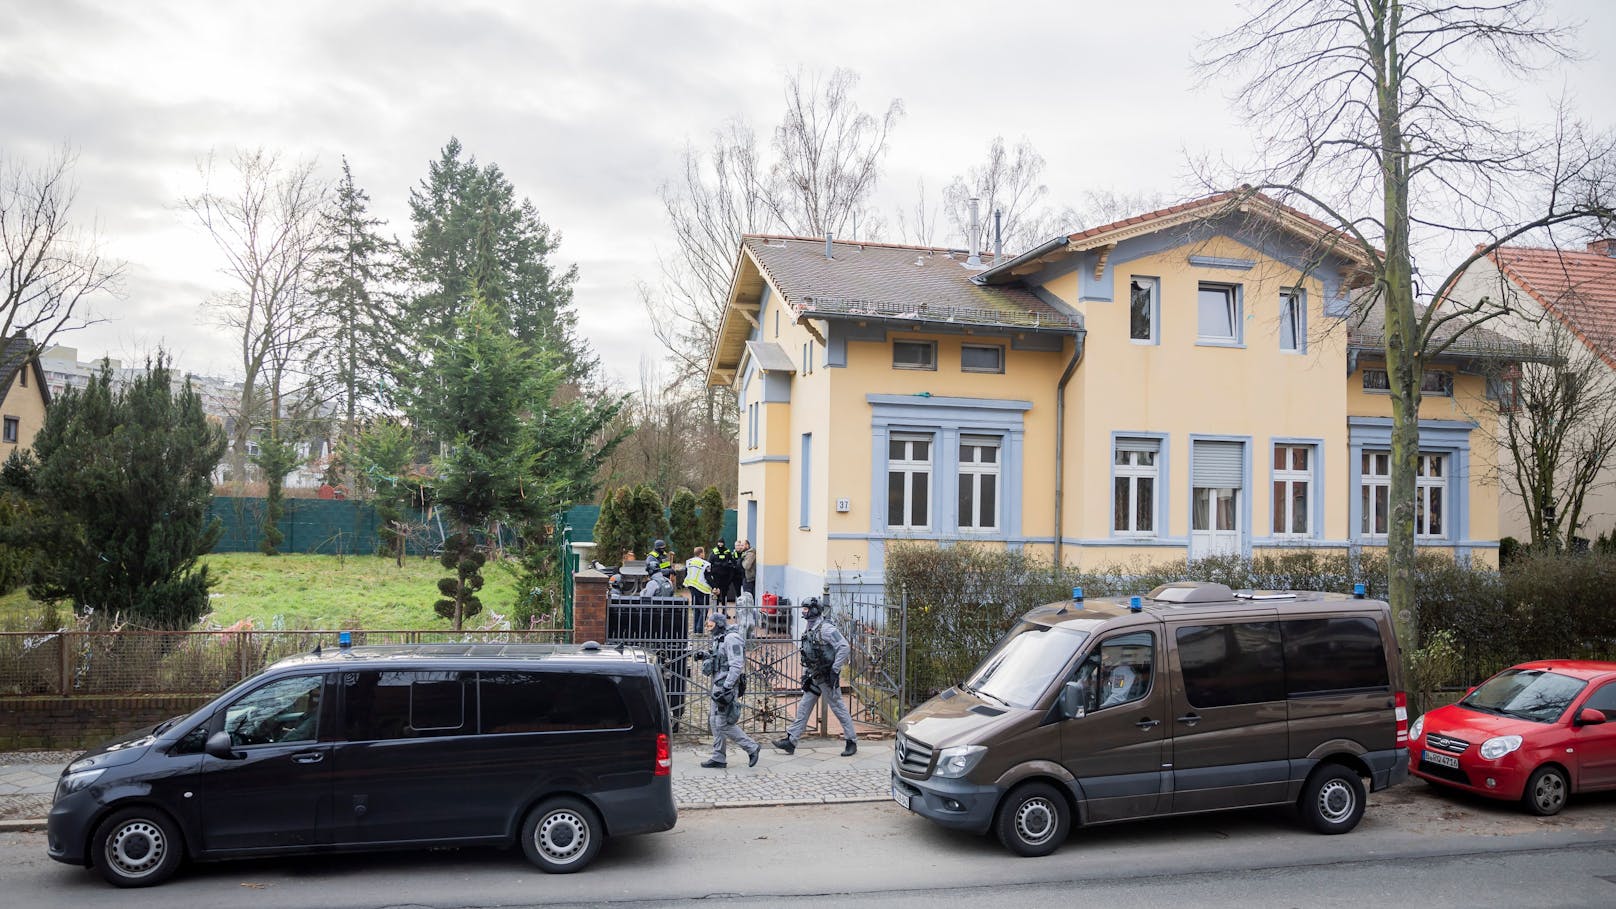 Hauptsitz: In dieser Berliner Villa wohnen 15 Angehörige des berüchtigten Remmo-Clans.